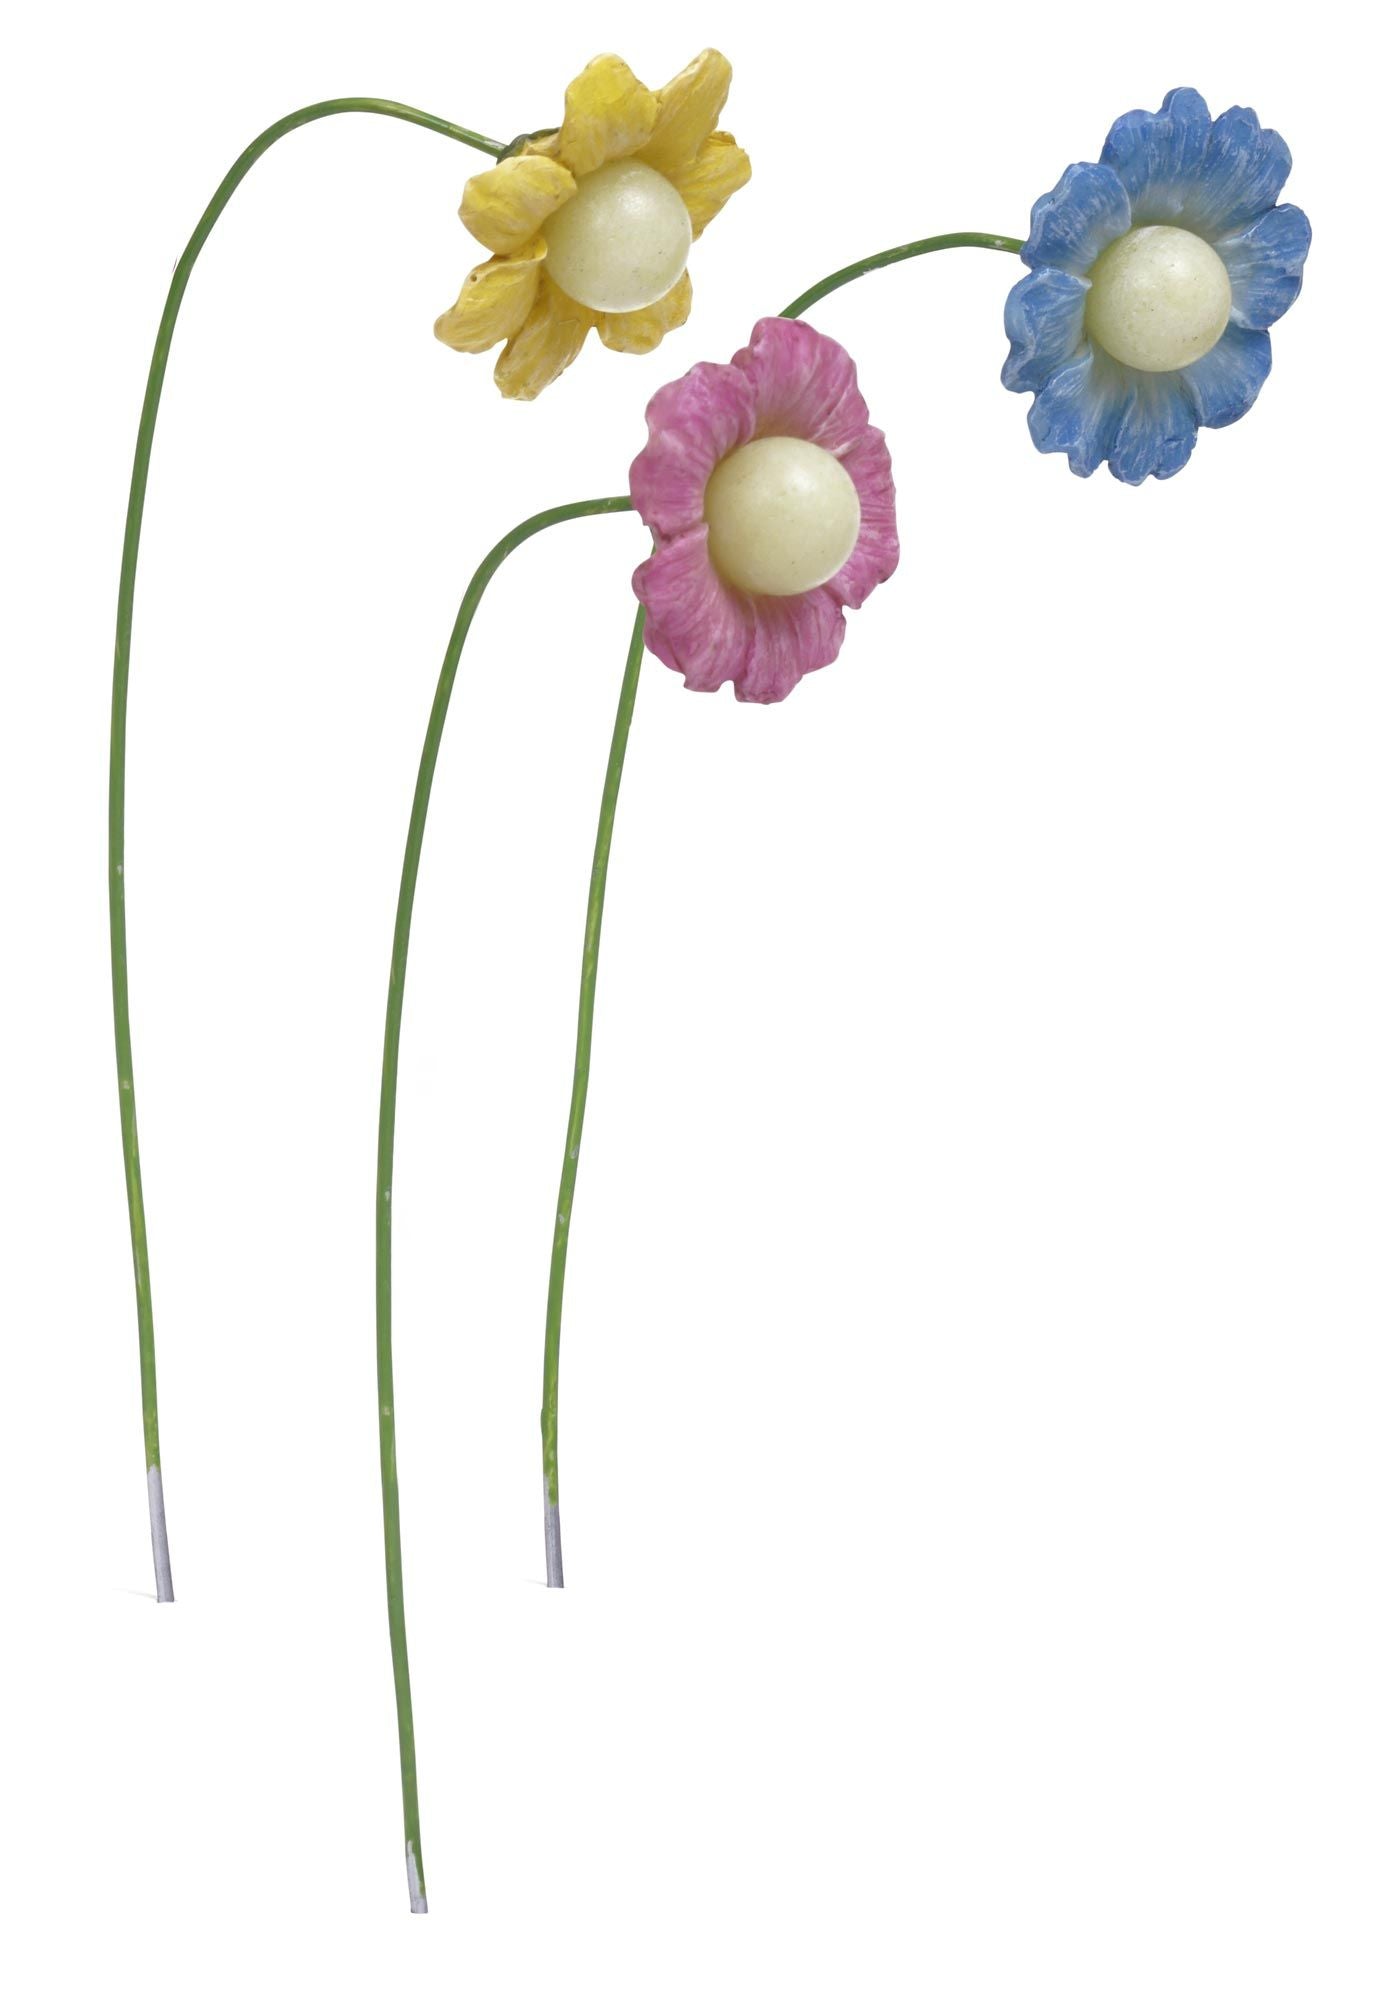 Miniature Petal Glow Flowers, 3 Piece Set for Miniature Garden, Fairy Garden, Blue